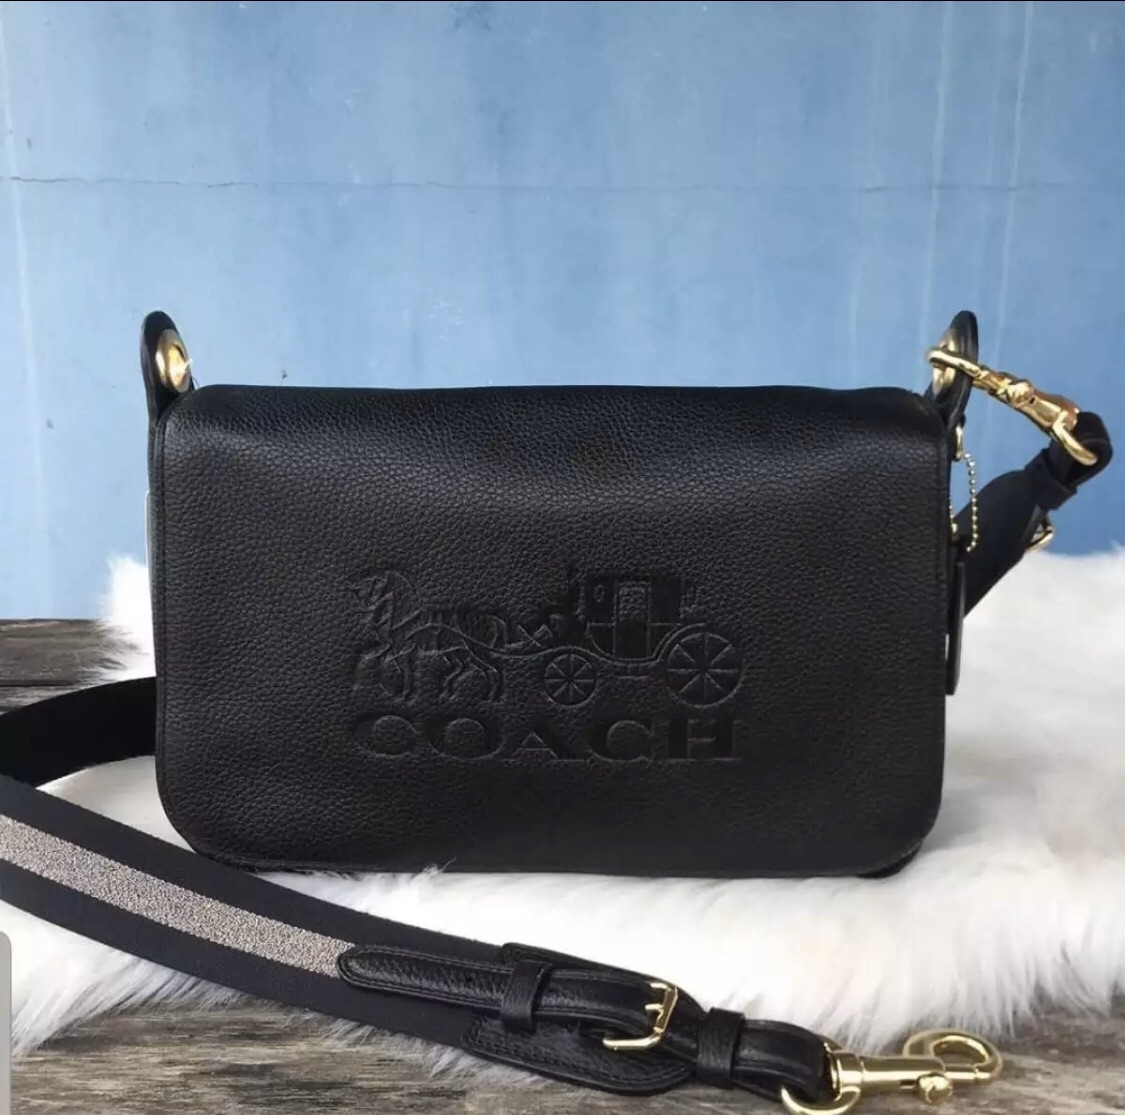 Fargo Black Sling Bag Women's Leatherette Sling Bag (Black)  (VChainBox_Black_FGO-464) Black - Price in India | Flipkart.com